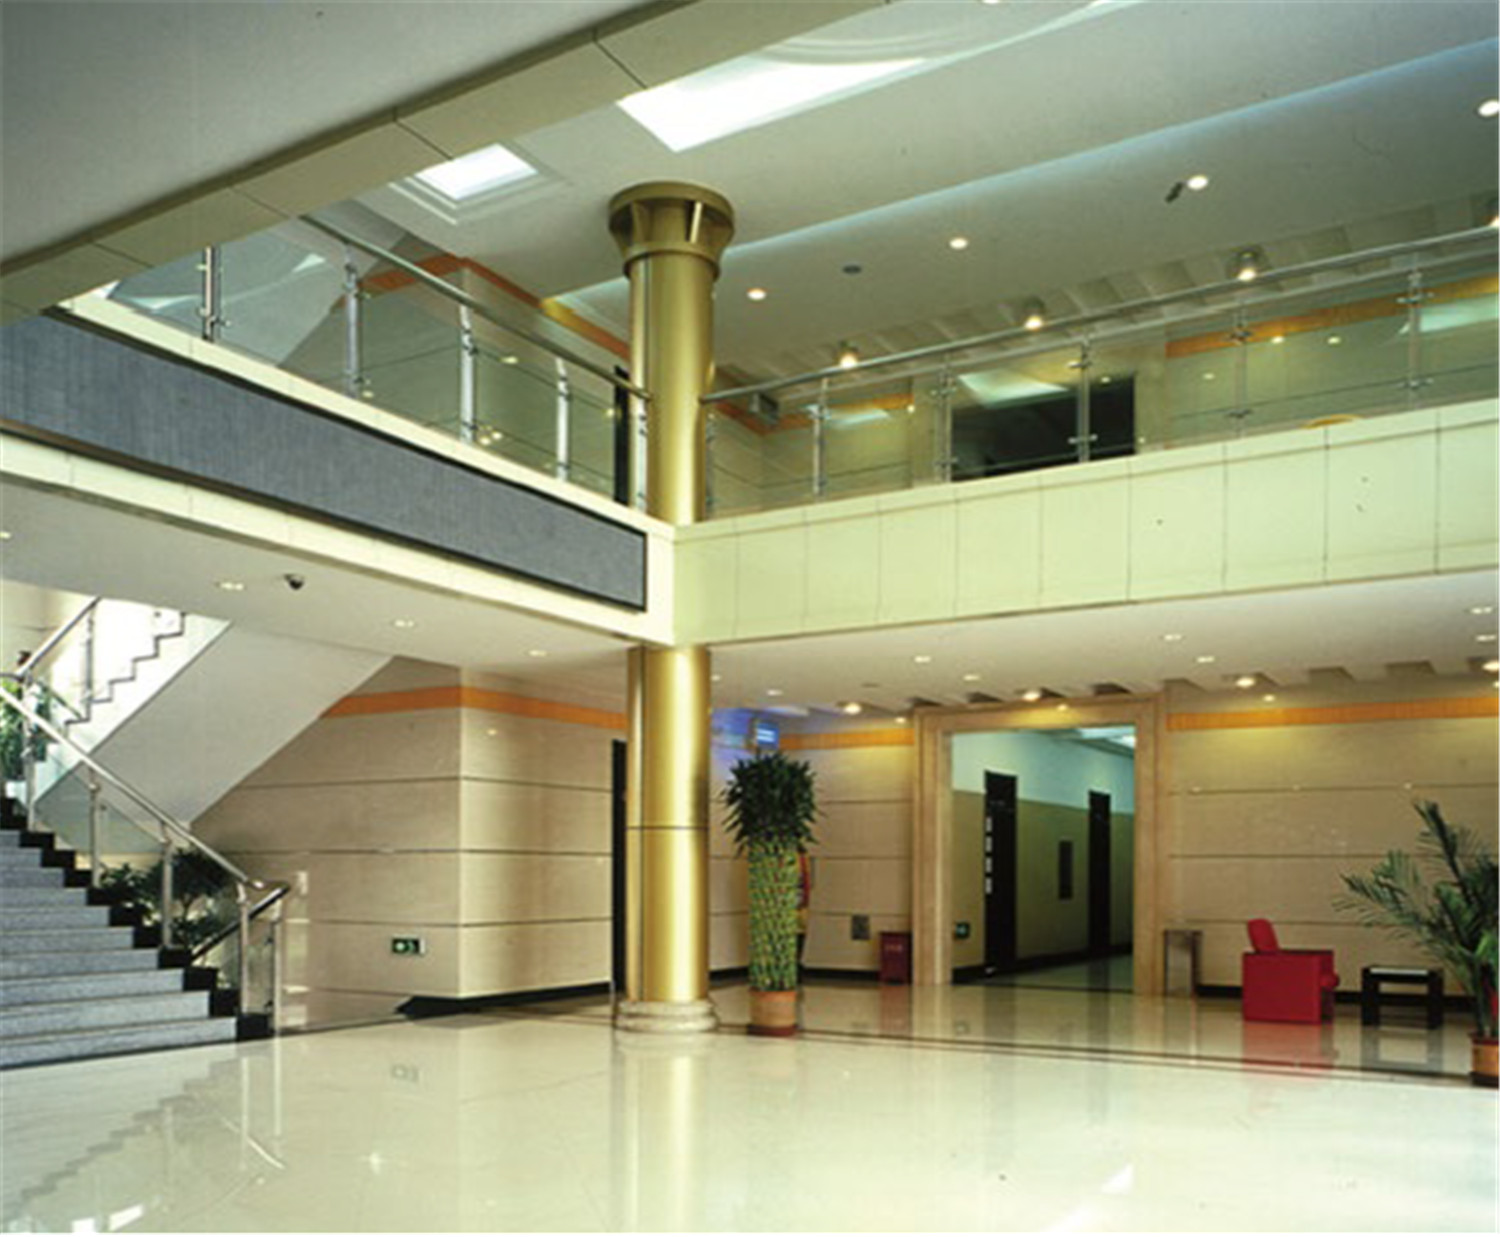 哈尔滨中国标准铅笔公司办公楼